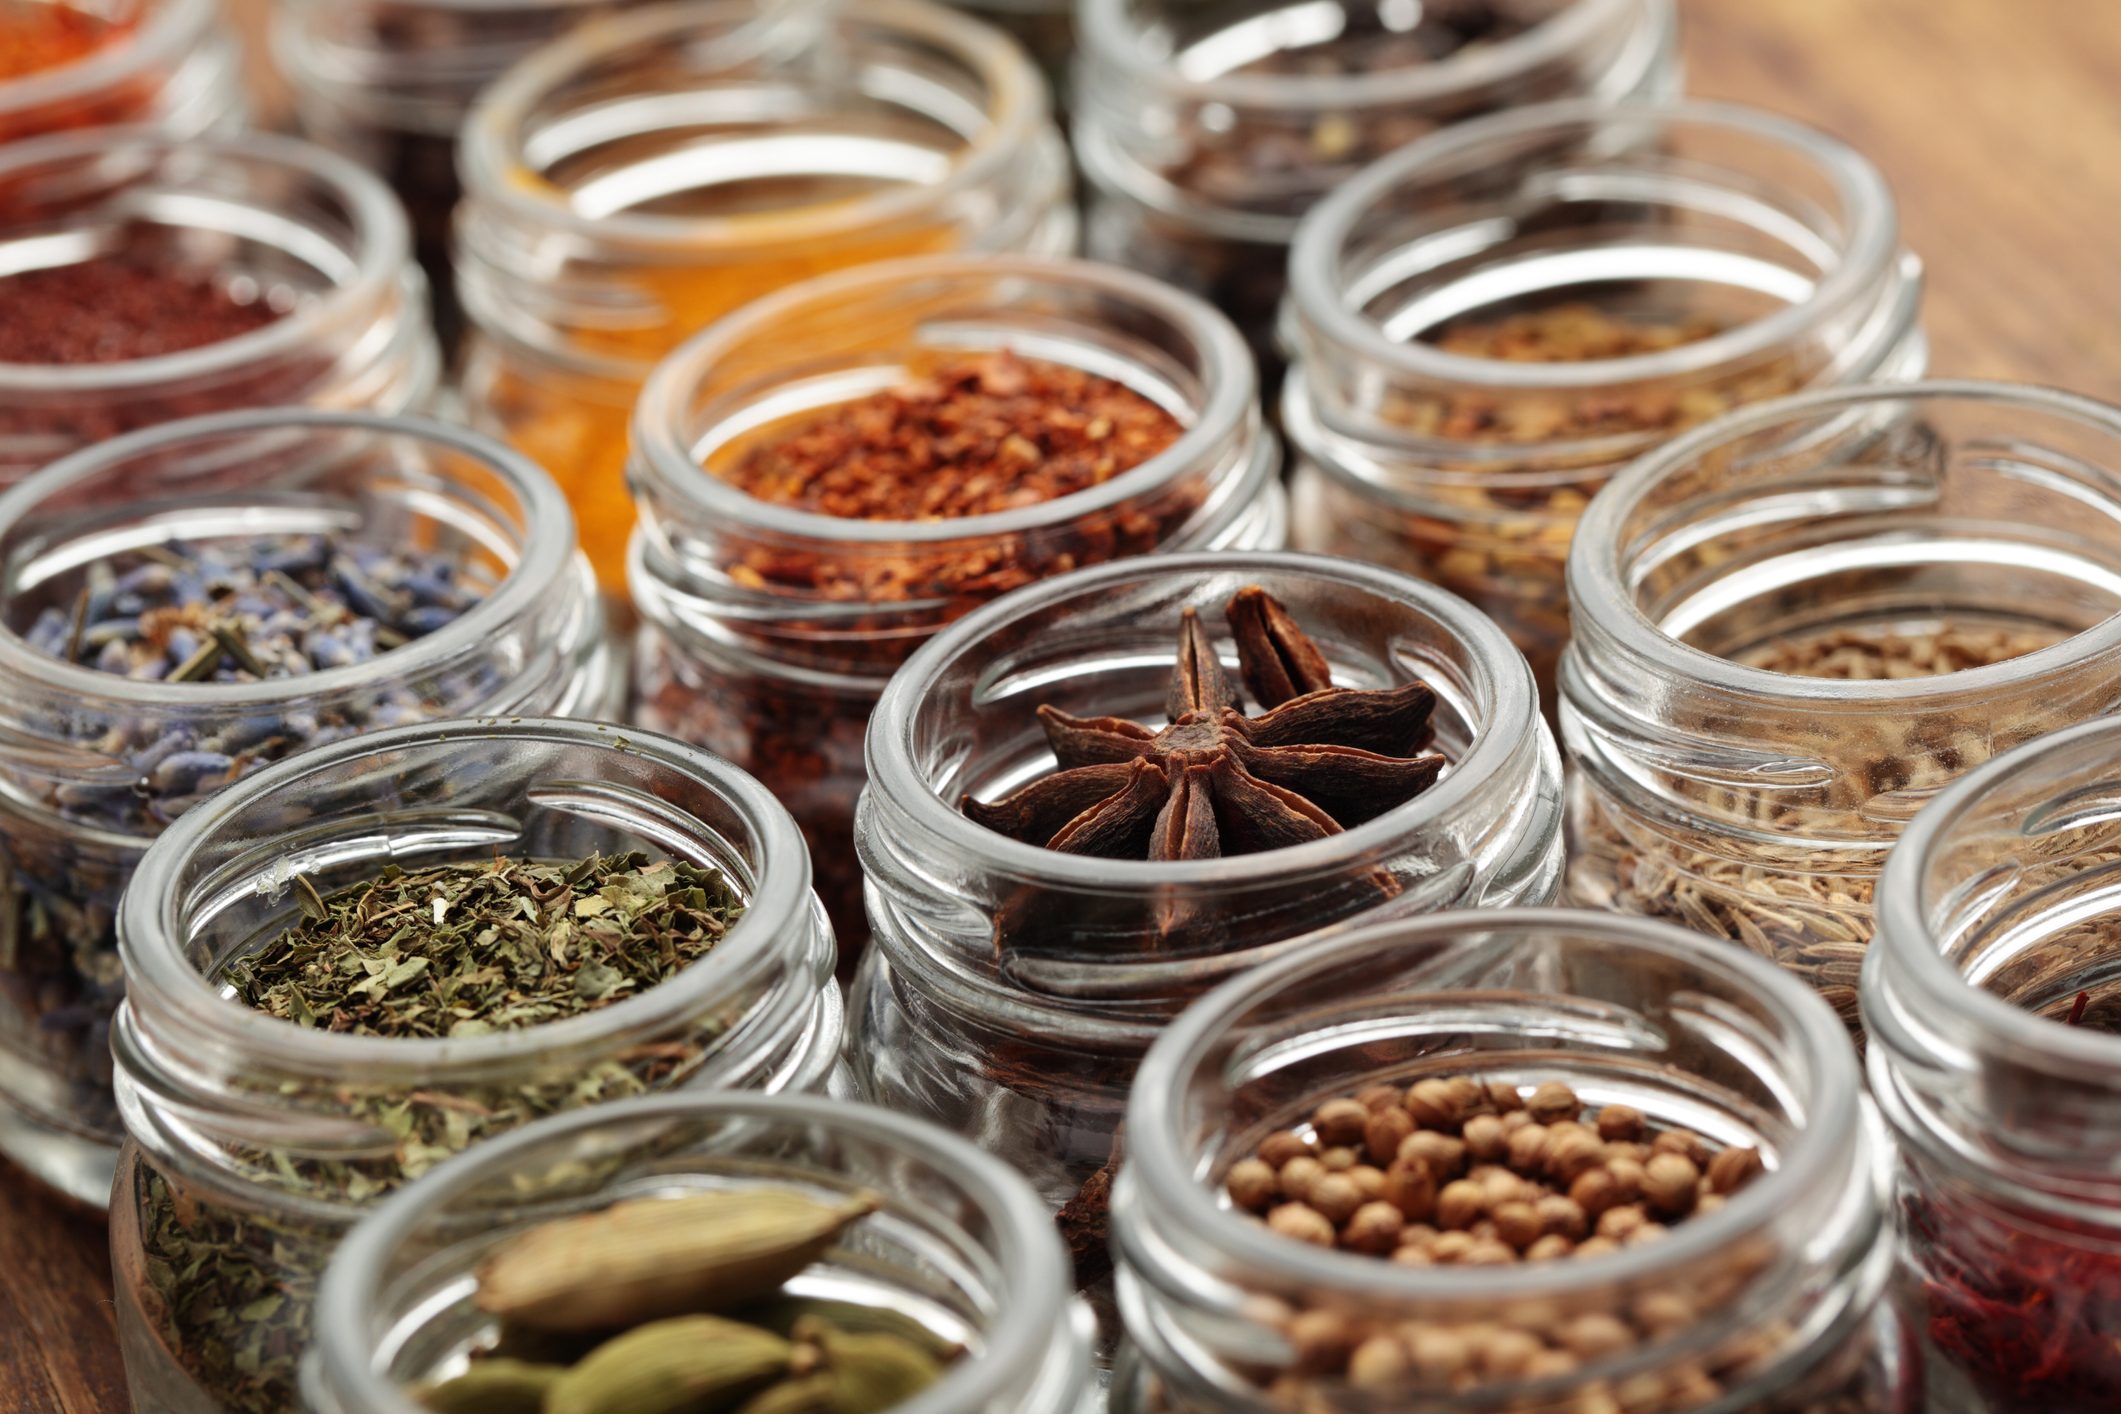 Budget-friendly herbs and seasonings